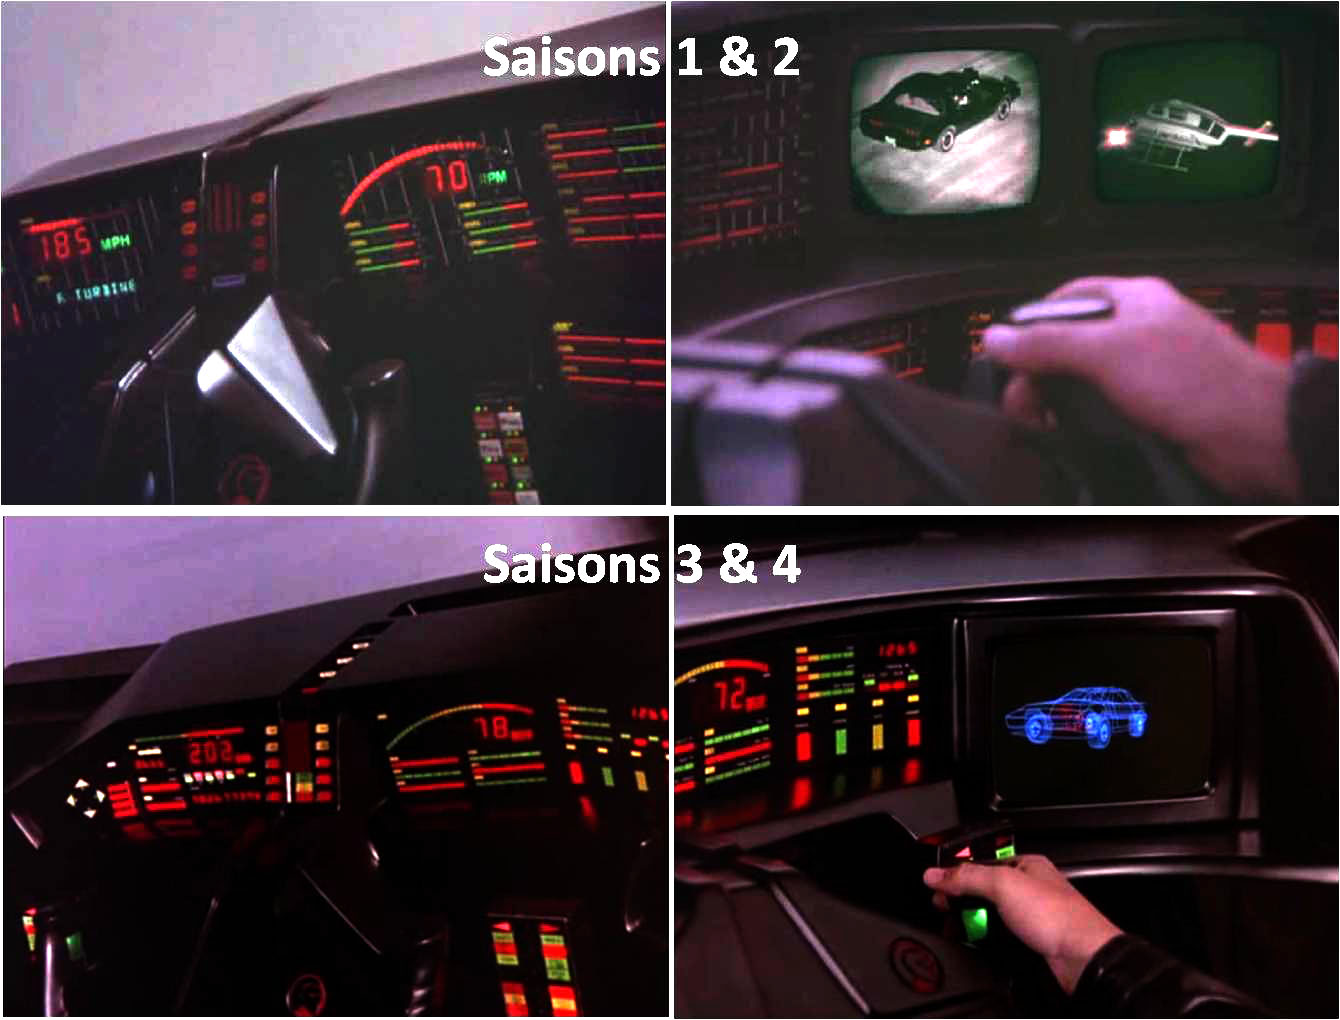 Comparaison des différents tableaux de bord de K.I.T.T. (K2000 - Knight Rider)